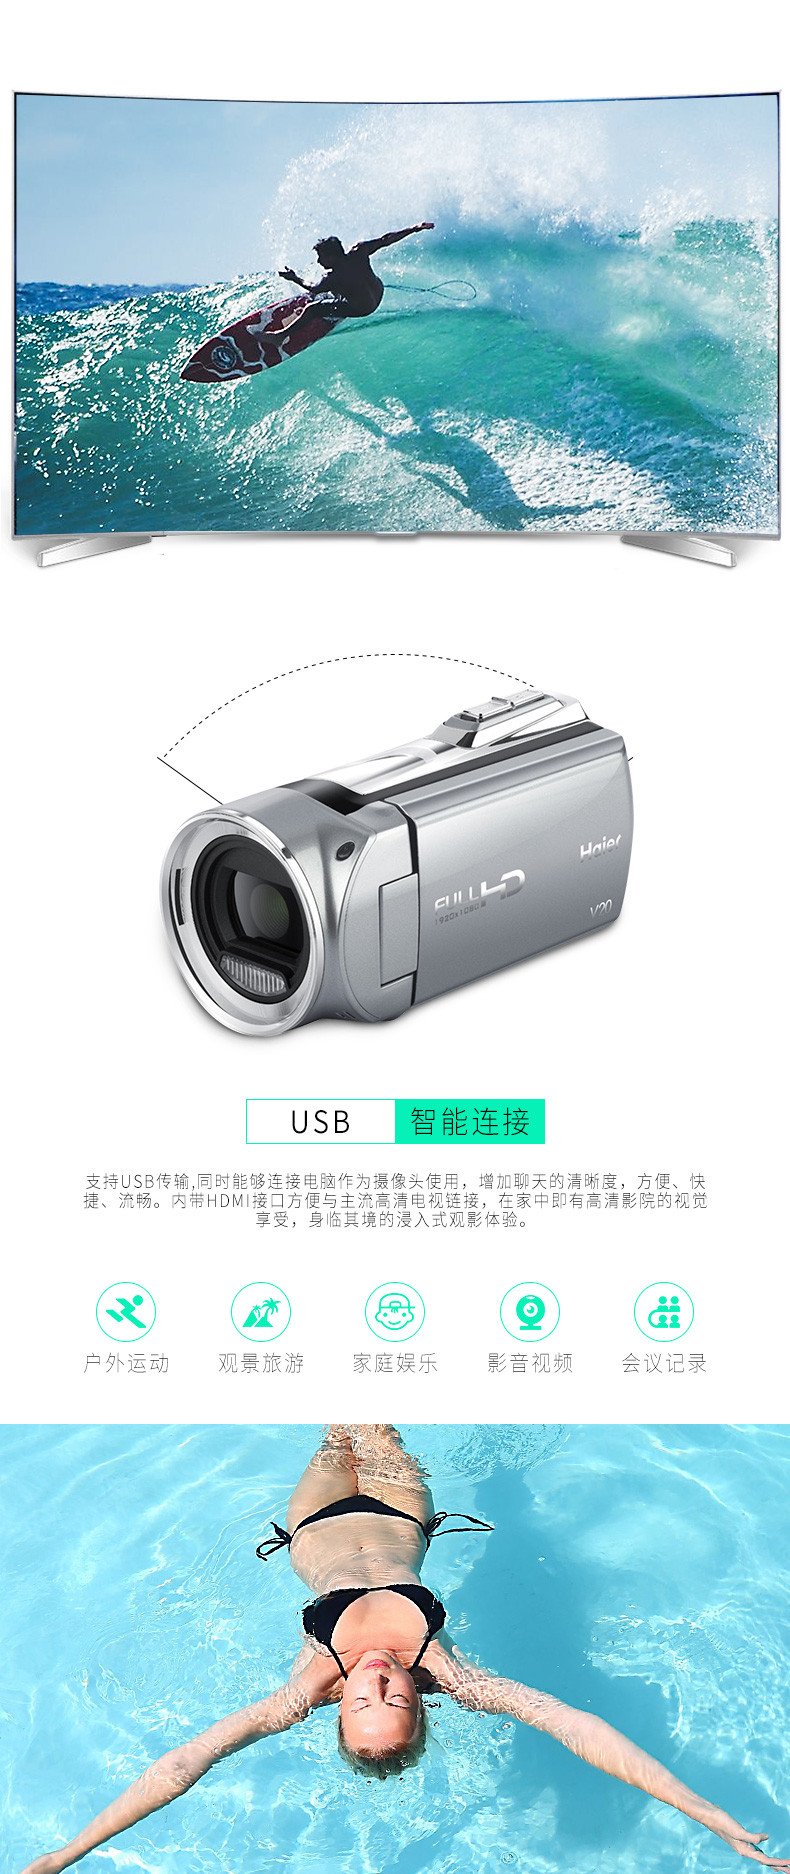 海尔数码相机Dv-v20 正品全国联保